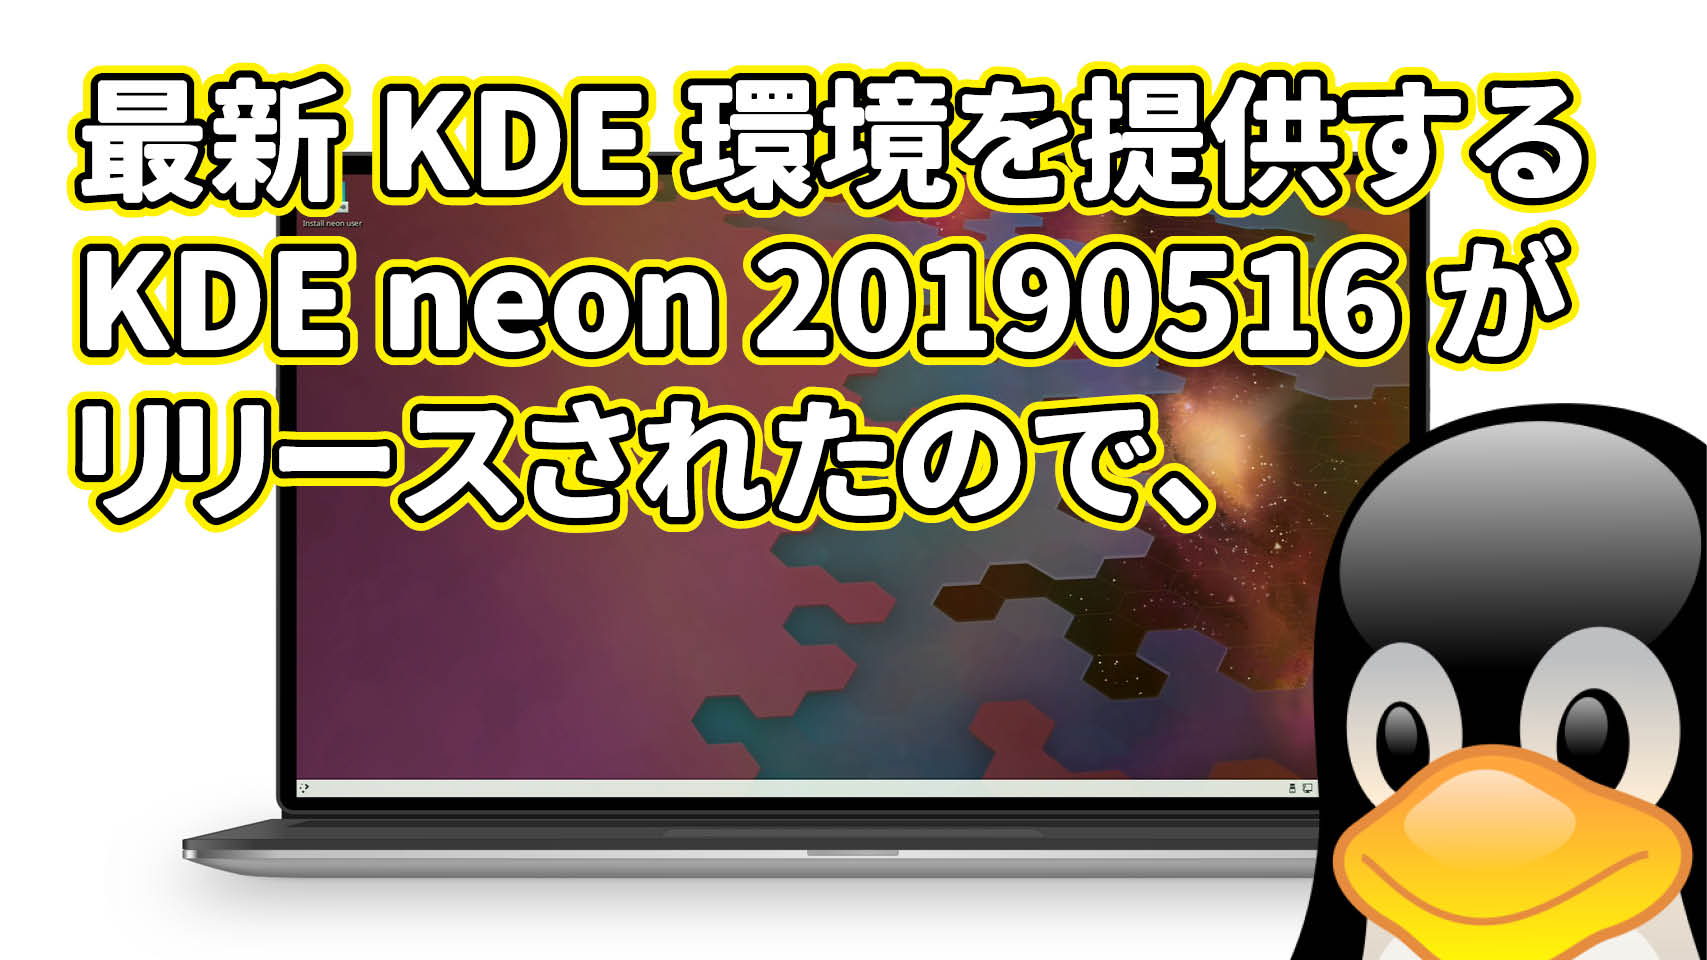 最新の KDE 環境を提供する KDE neon 20190516 がリリースされたので、